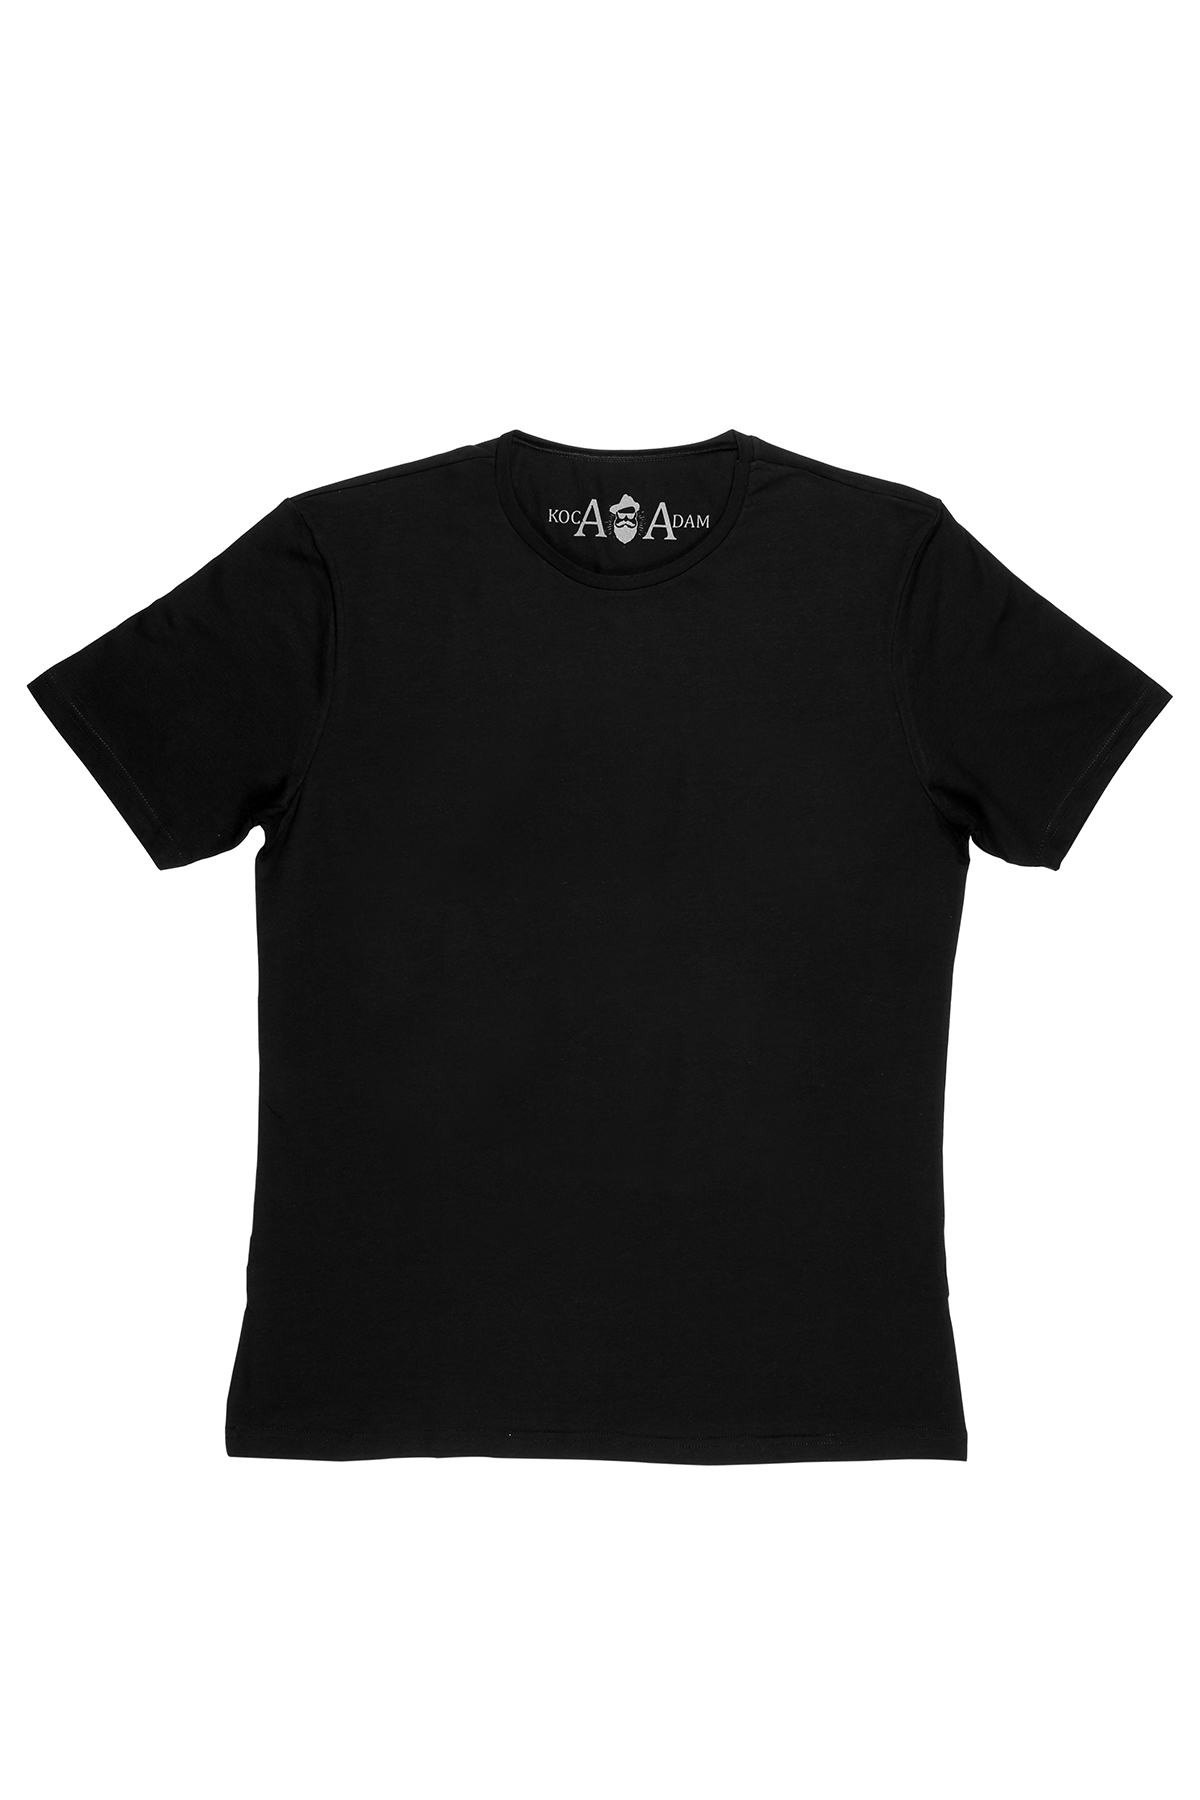 KOCA ADAM "Comfy" Koleksiyonu'ndan Büyük Beden Basic Siyah Tişört